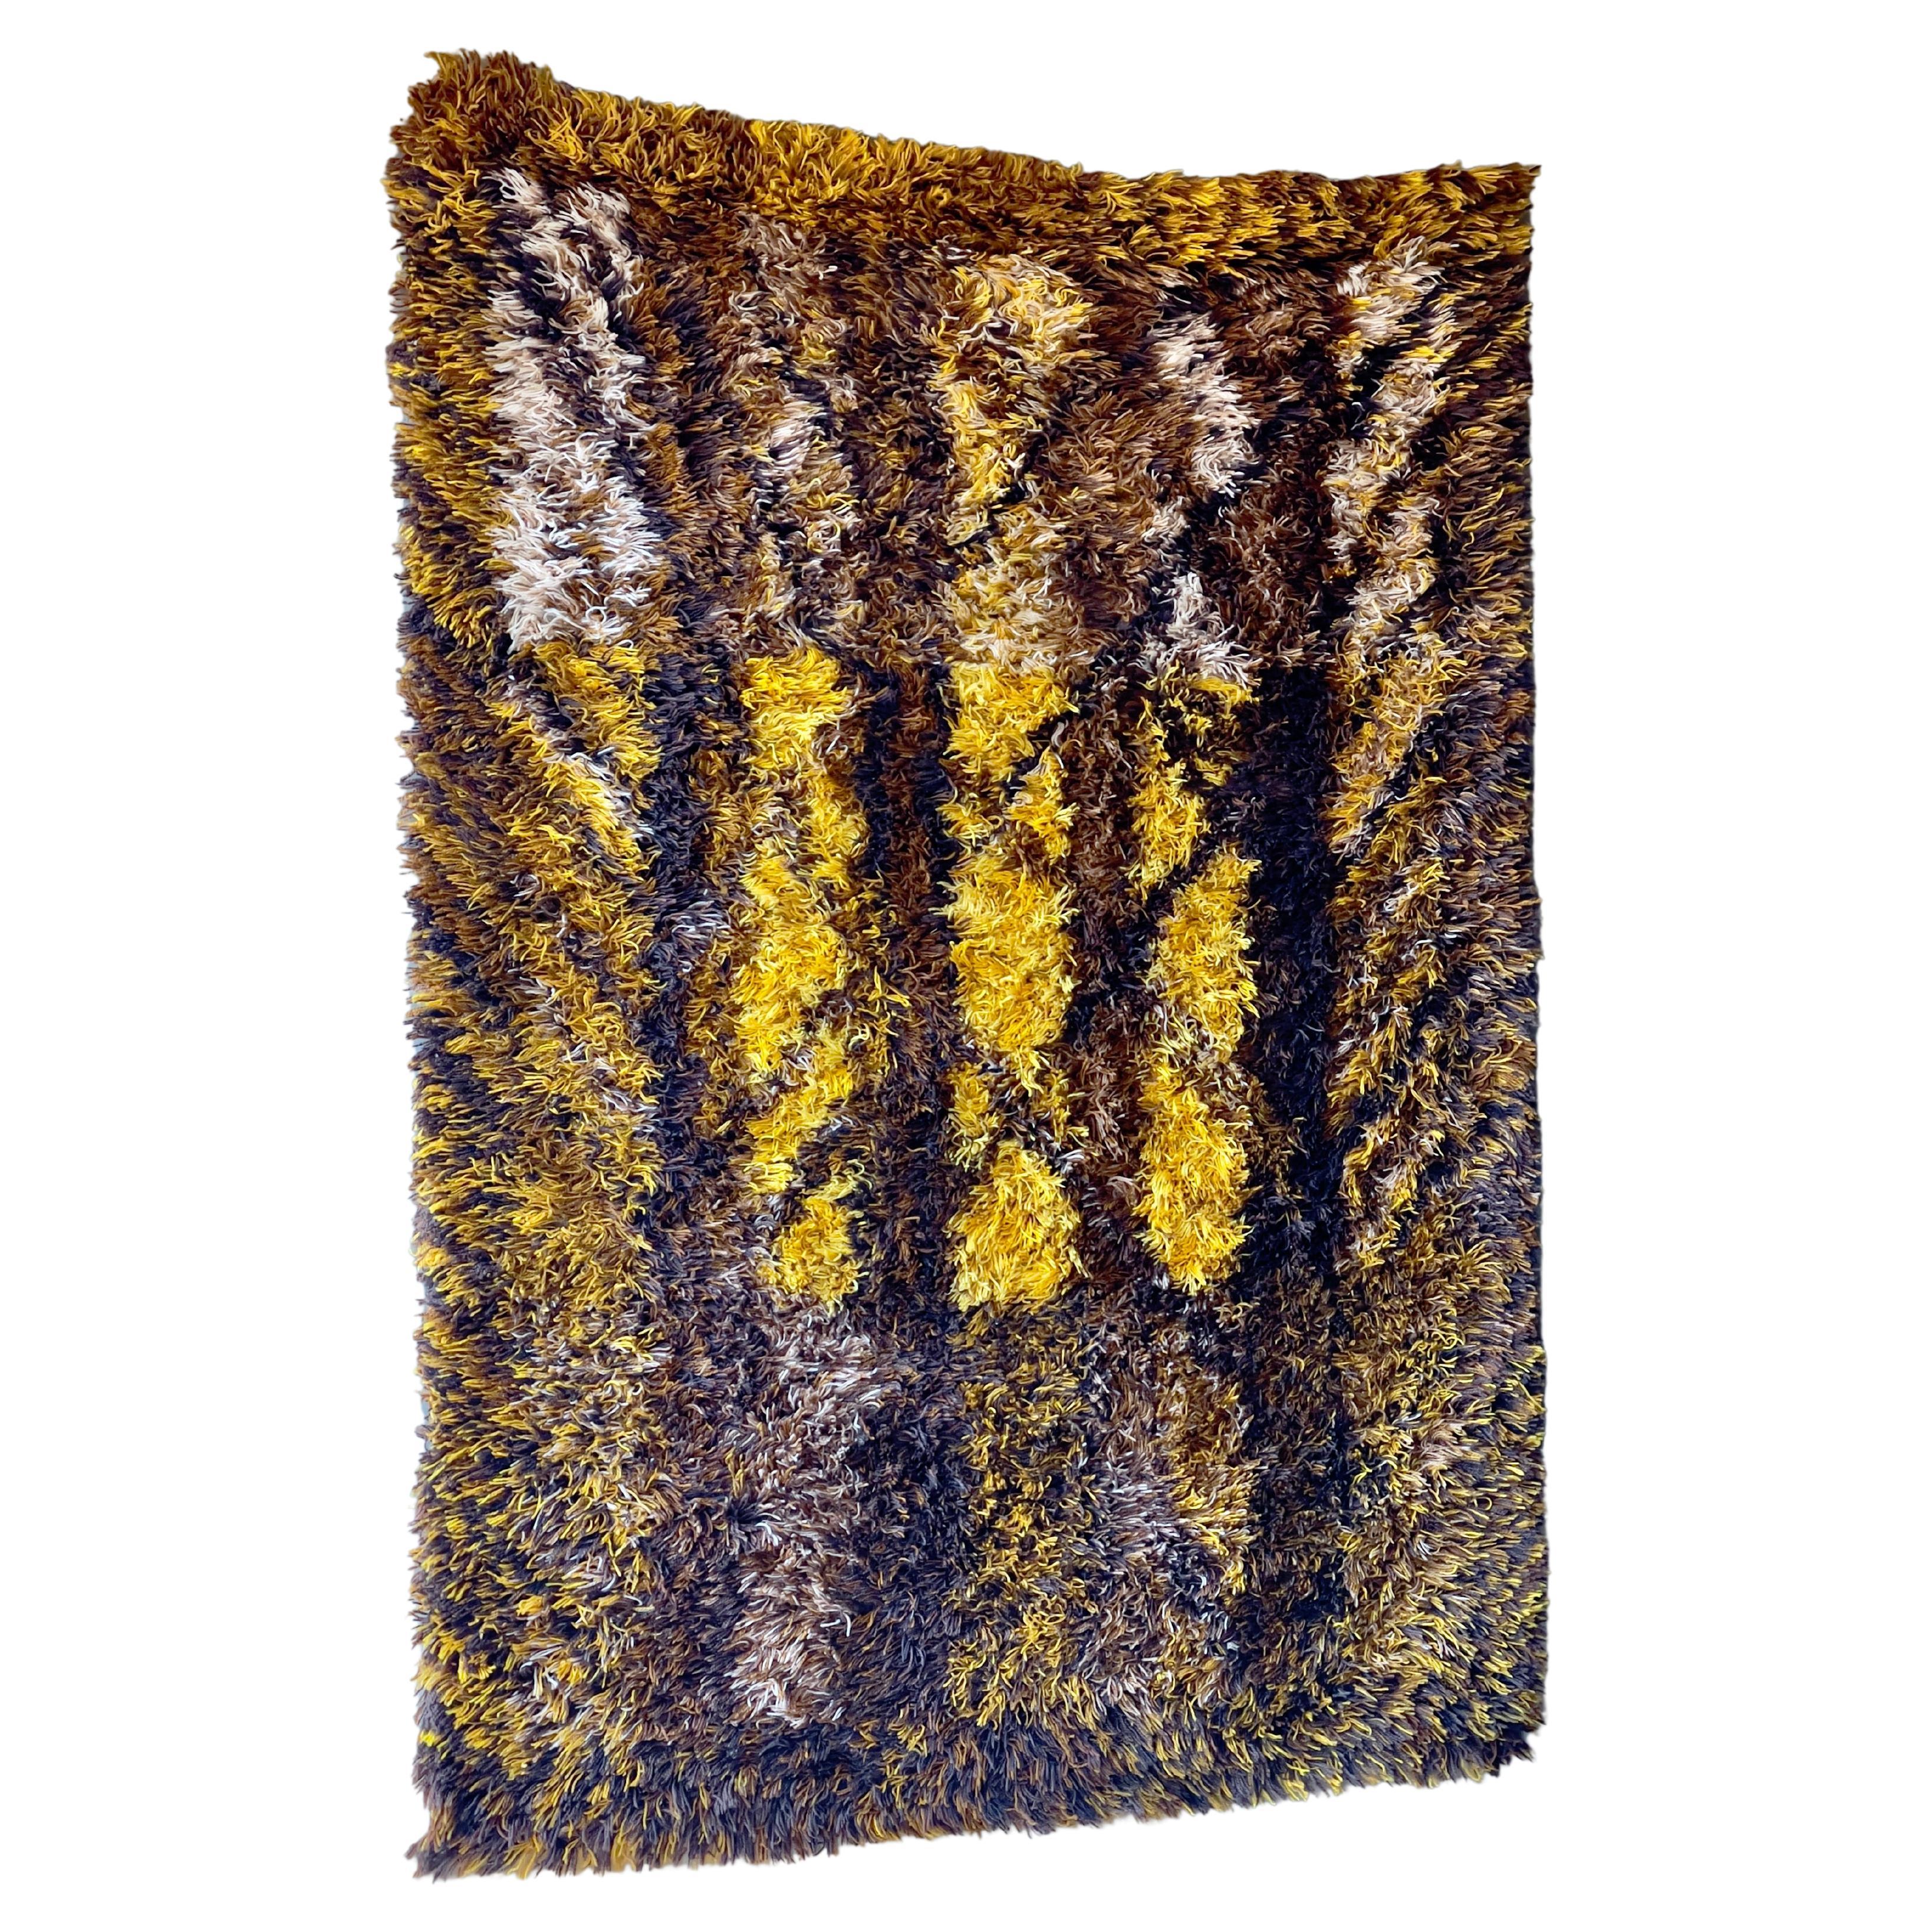 Tapis vintage suédois en rya brun jaune par Marianne Richter pour Ötergyllen rya, 1960s. Fabriqué à la main selon la technique de tissage Rya à partir de 100% de laine.

L'artiste textile suédoise Marianne Richter est internationalement Revere pour